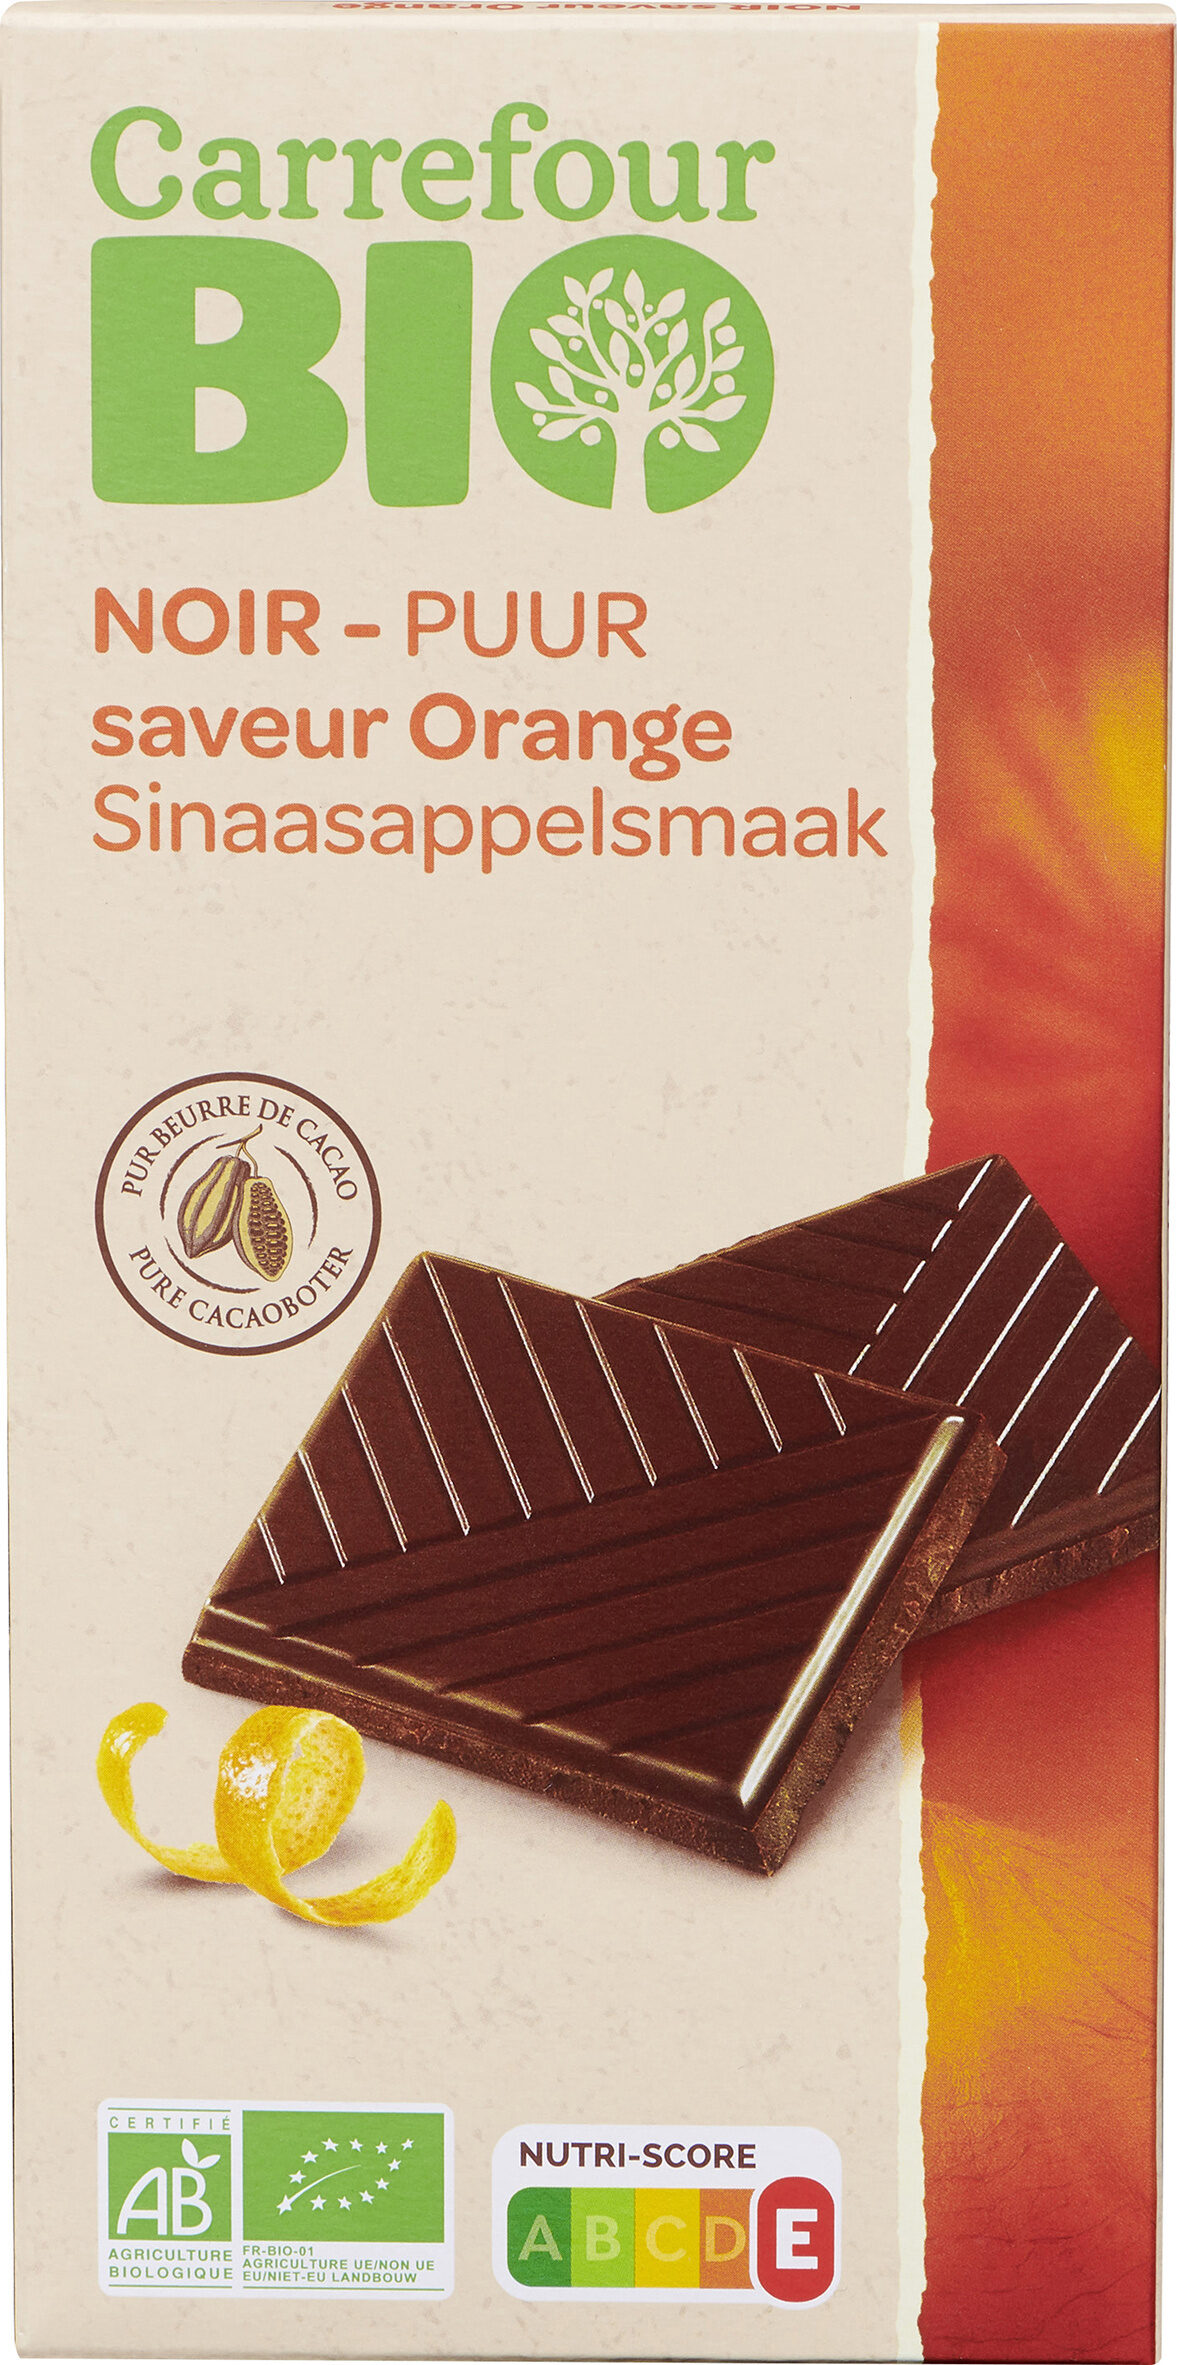 NOIR saveur Orange - Produit - fr